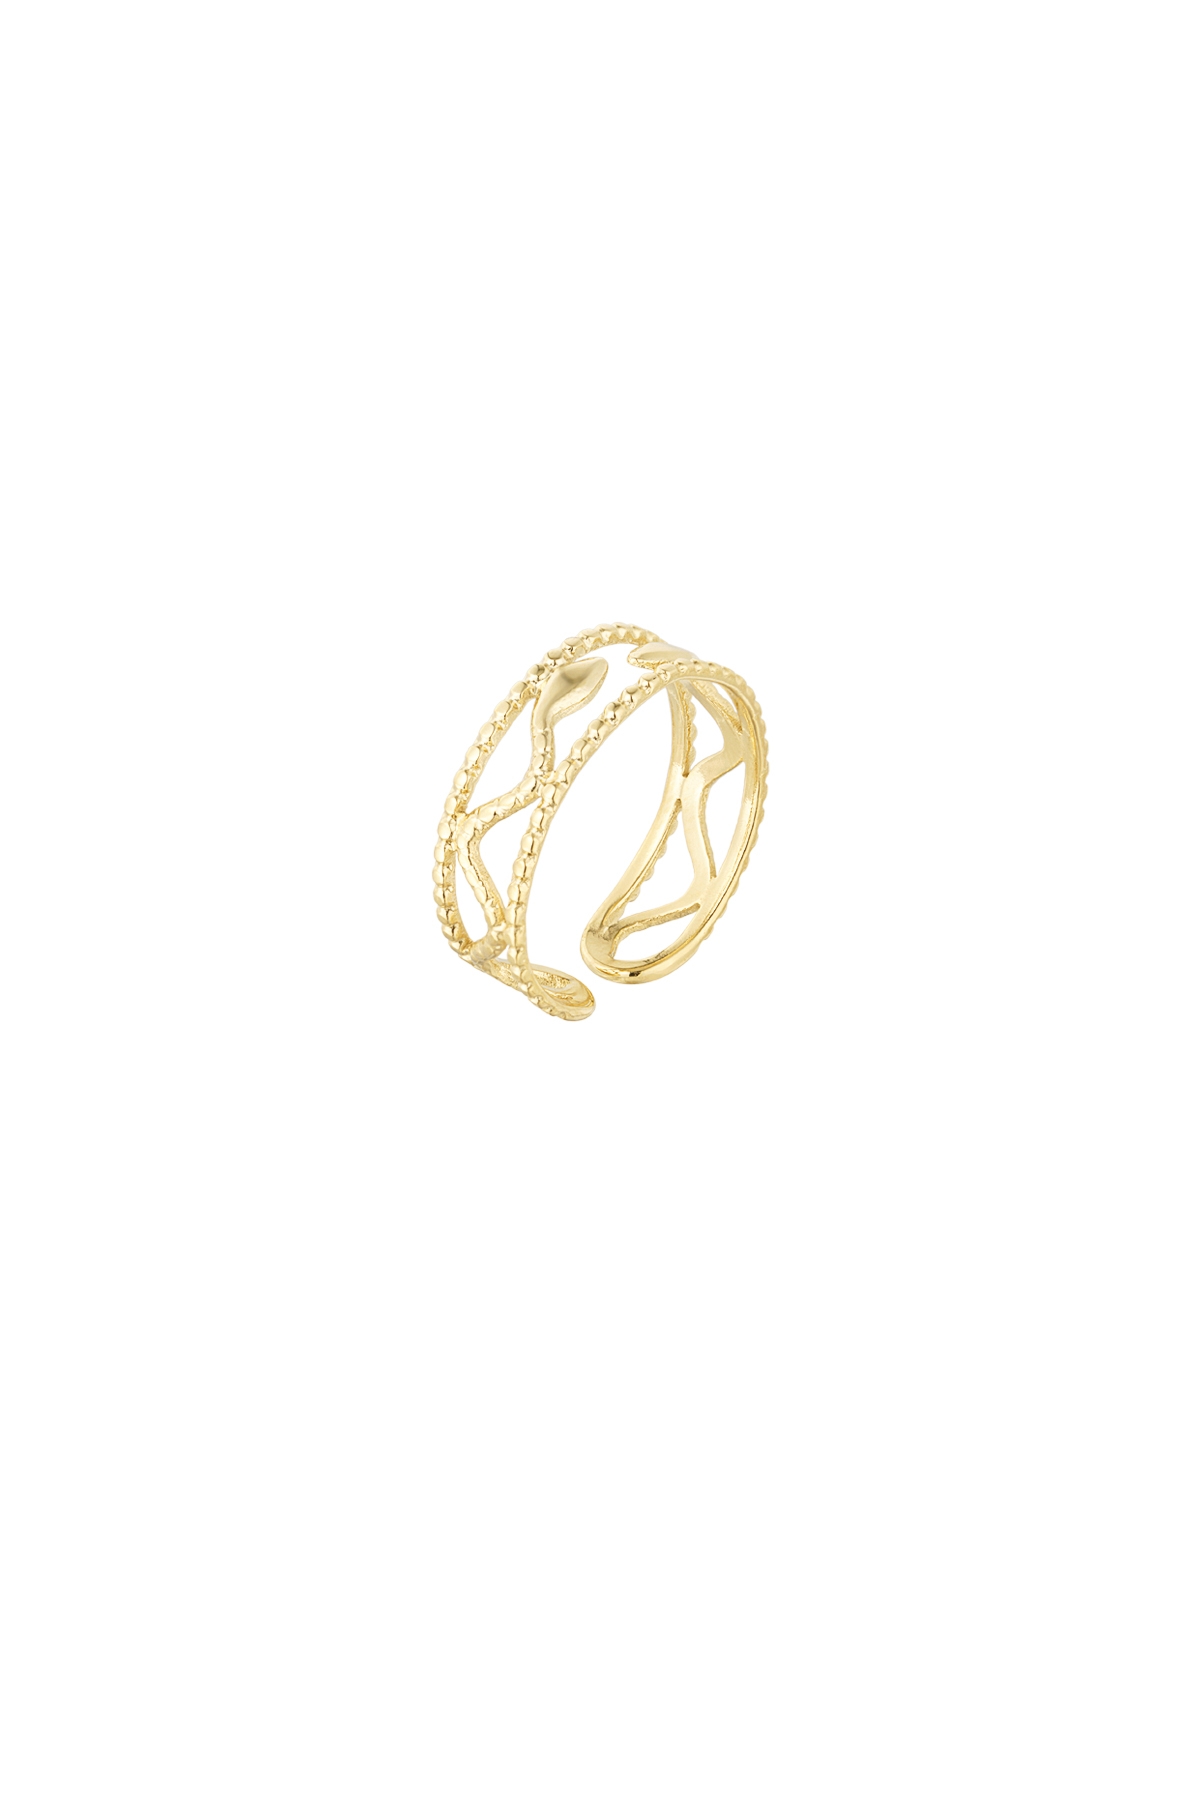 Anillo estilo serpiente - oro h5 Imagen3